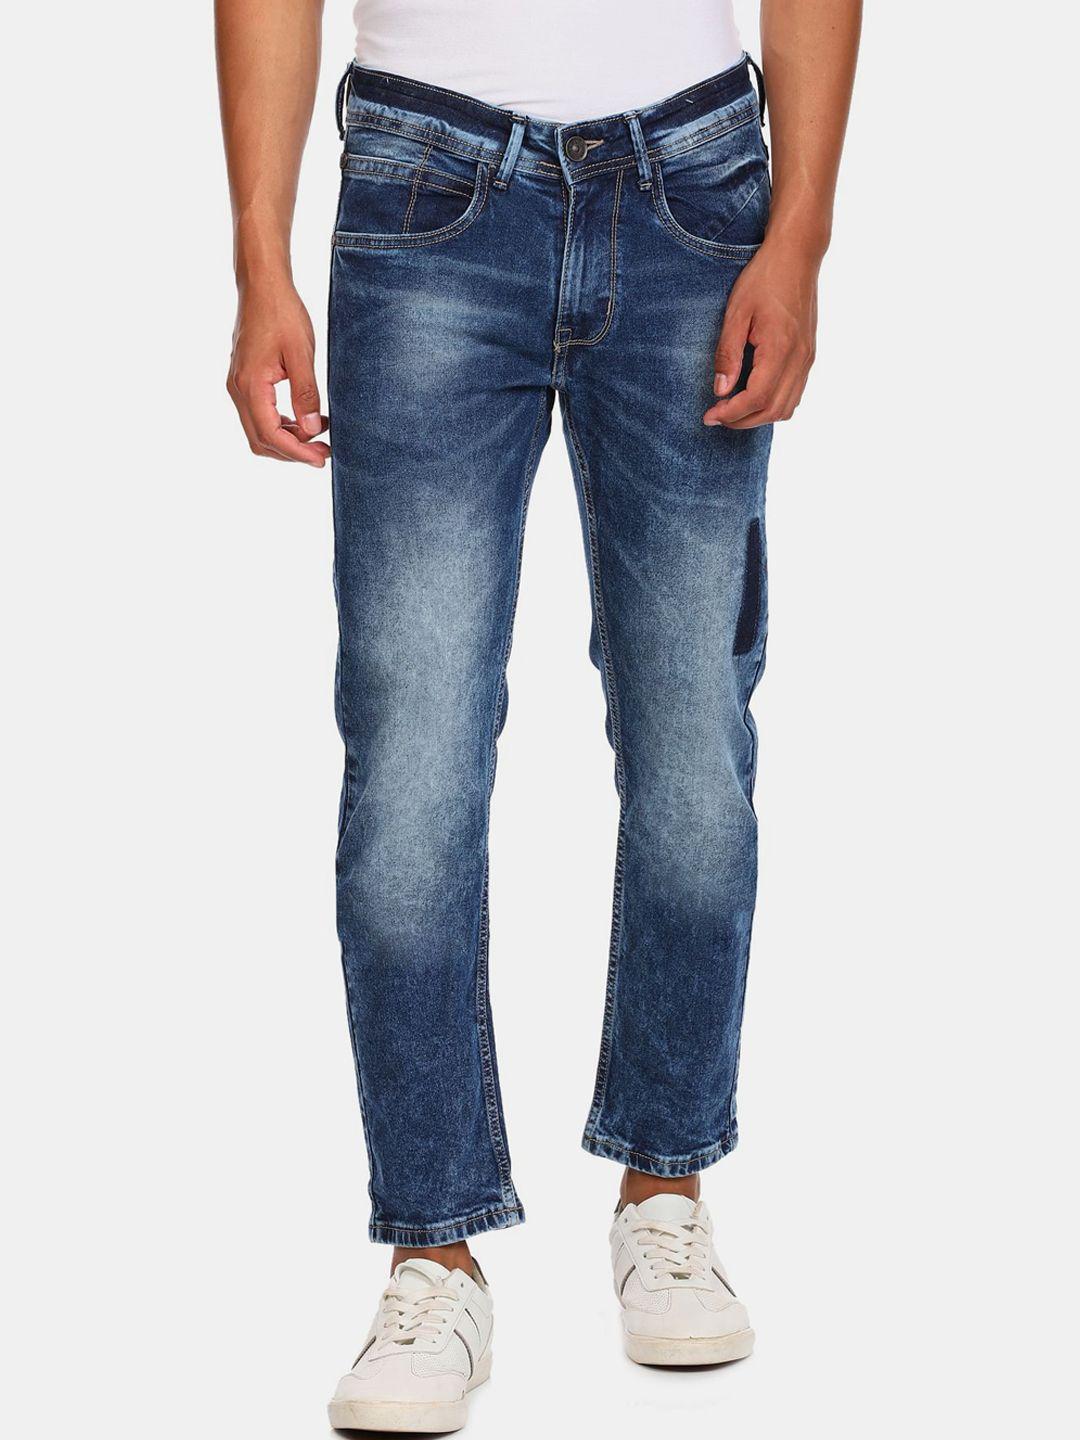 colt-men-blue-heavy-fade-jeans